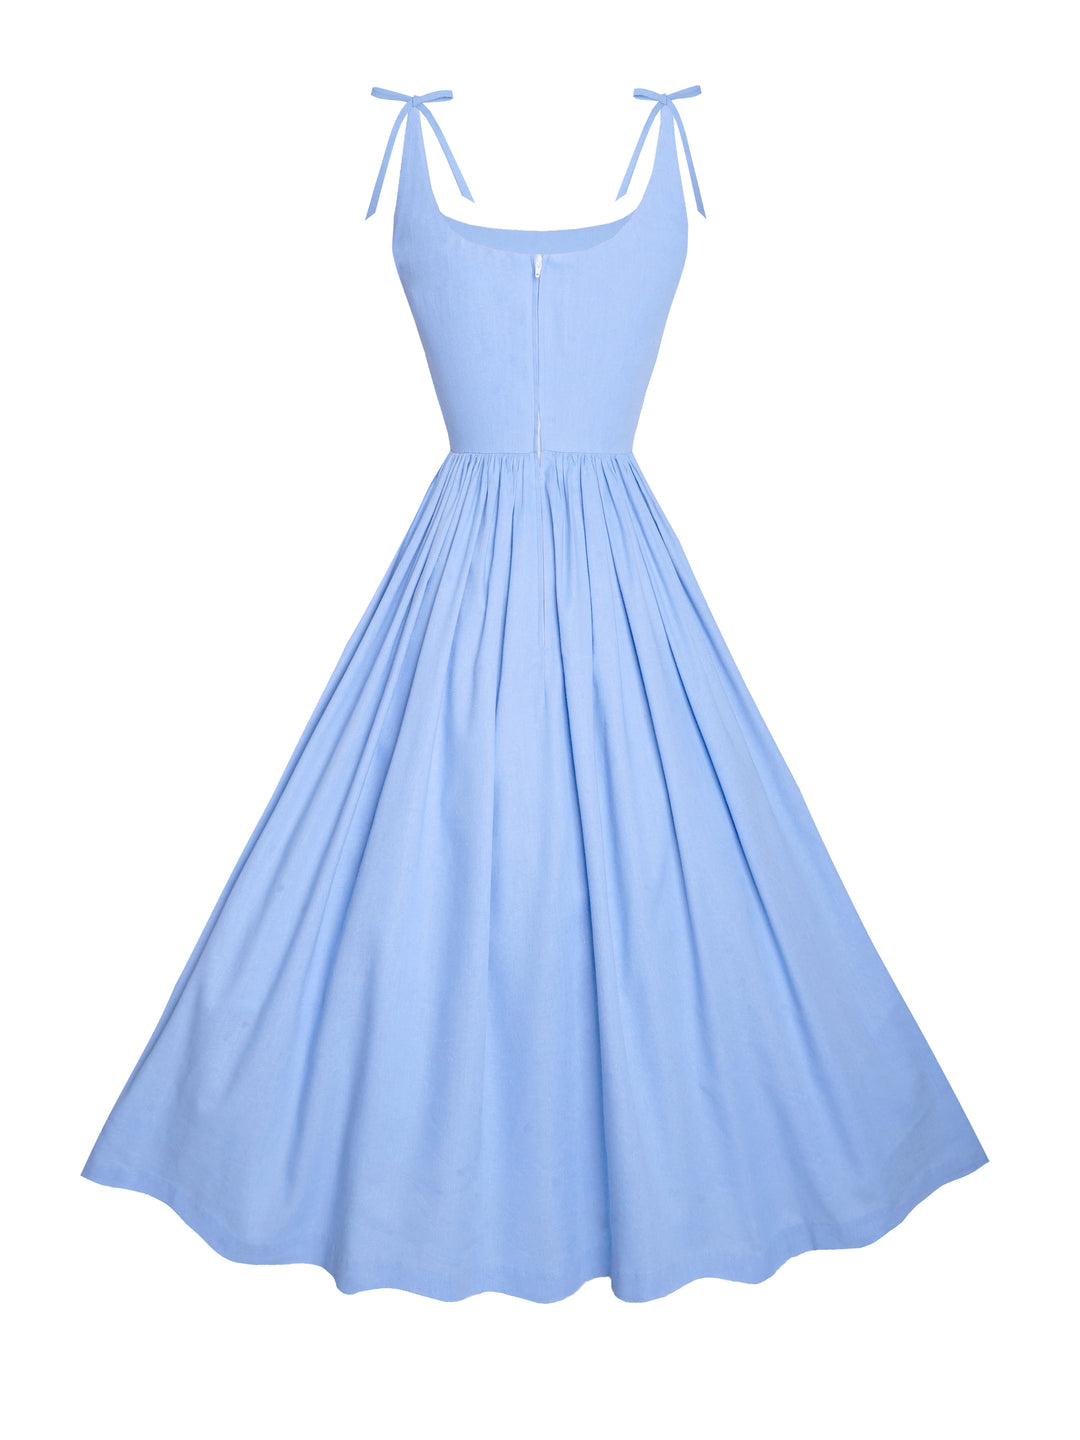 MTO - Birdie Dress in Powder Blue Linen